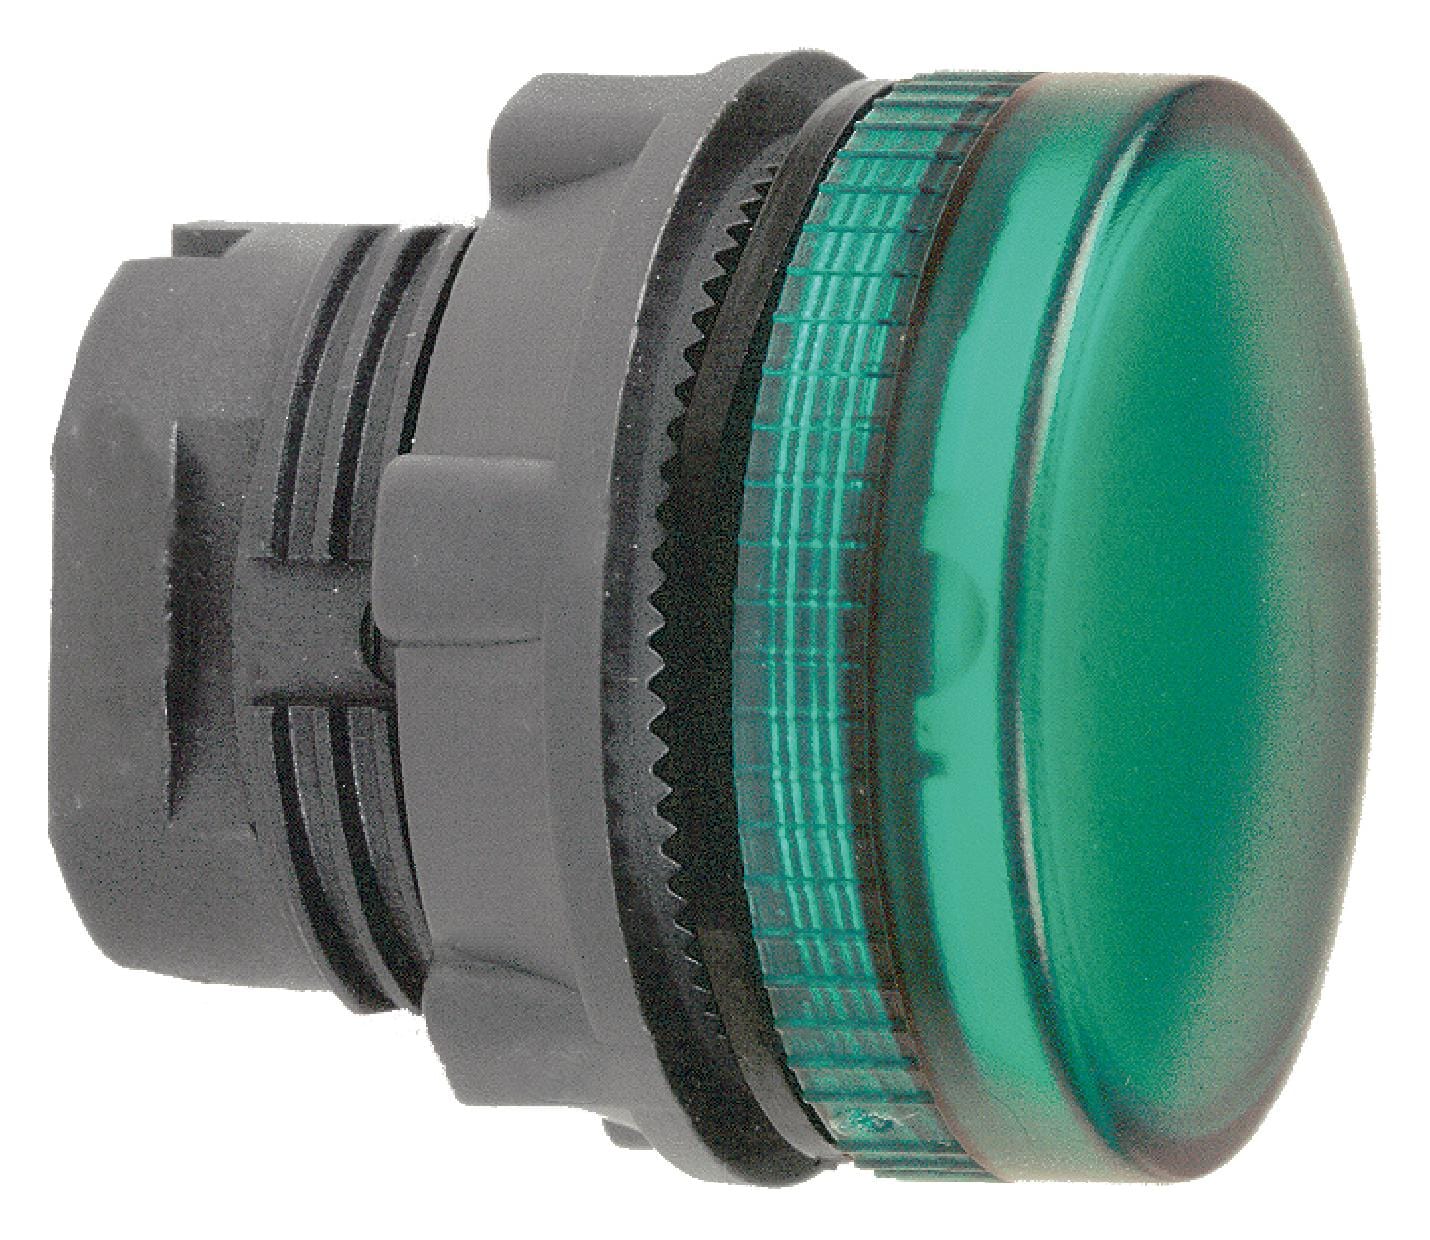 SCHNEIDER ELECTRIC Indicator Lenses ZB5AV033S PILOT LIGHT HEAD, GREEN, ROUND, 22MM SCHNEIDER ELECTRIC 3115339 ZB5AV033S